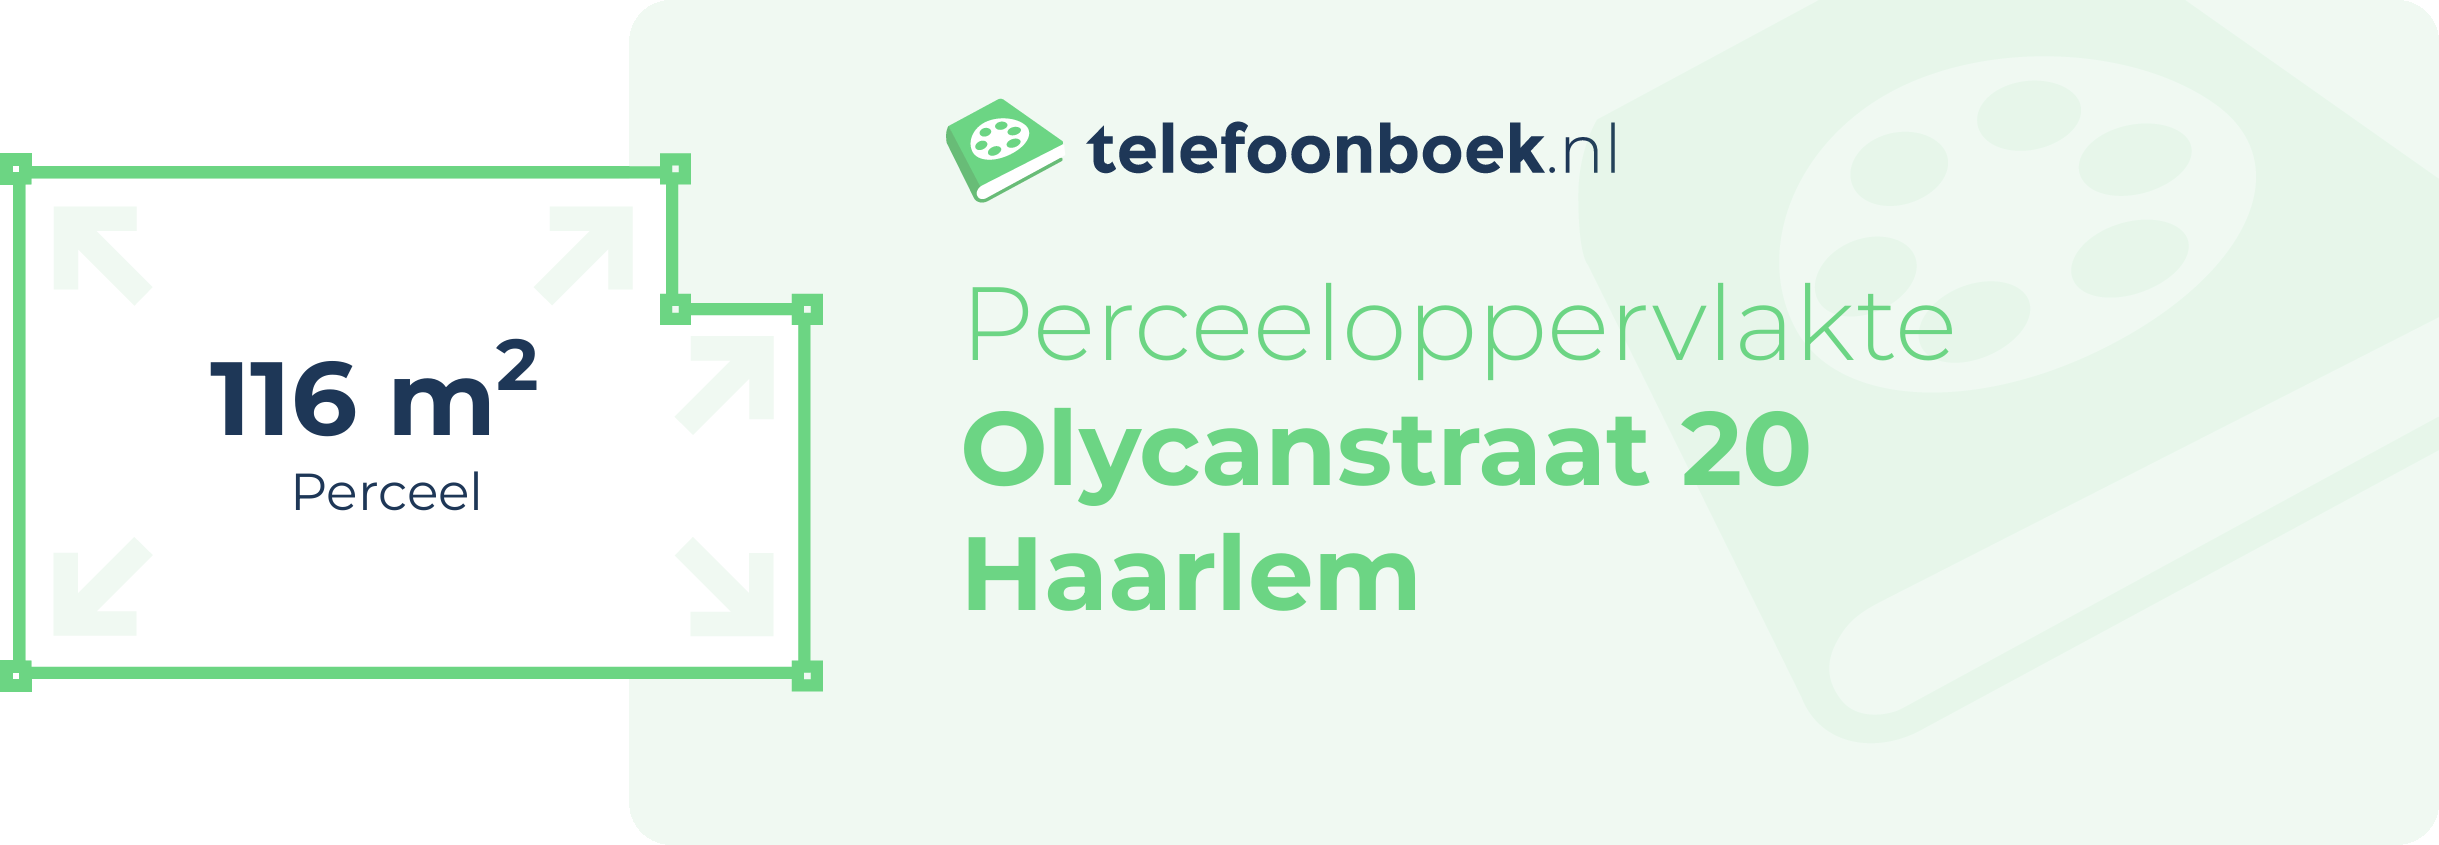 Perceeloppervlakte Olycanstraat 20 Haarlem